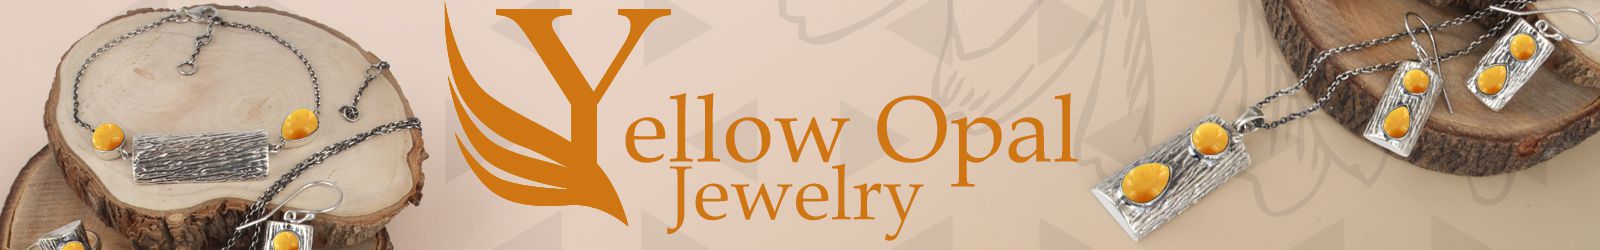 Wholesale Yellow Opal Jewelry